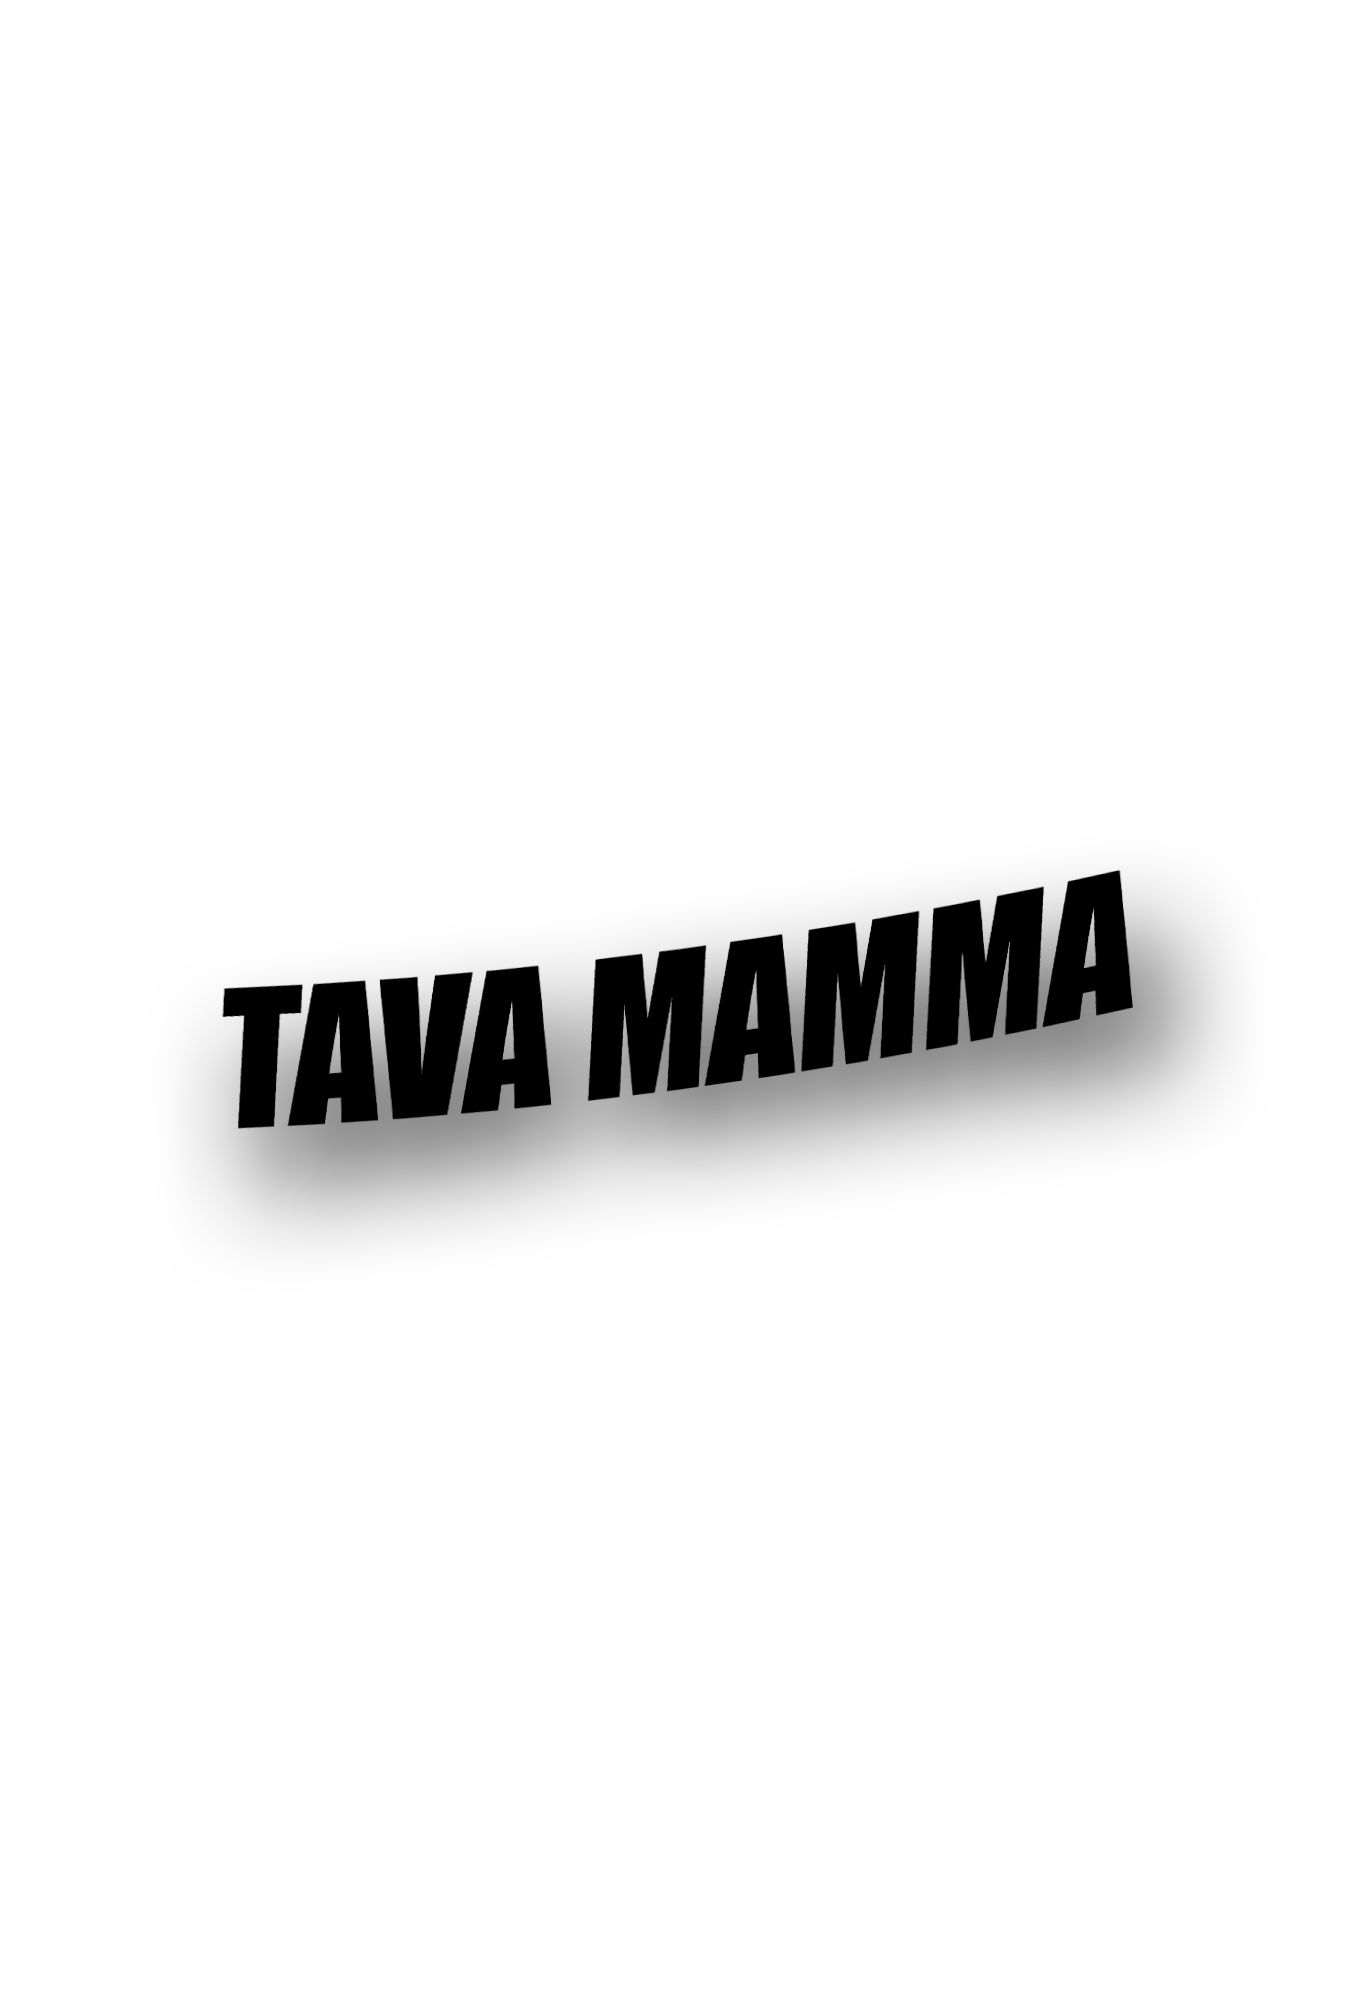 ''Tava mamma'' - Plotted Vinyl Sticker